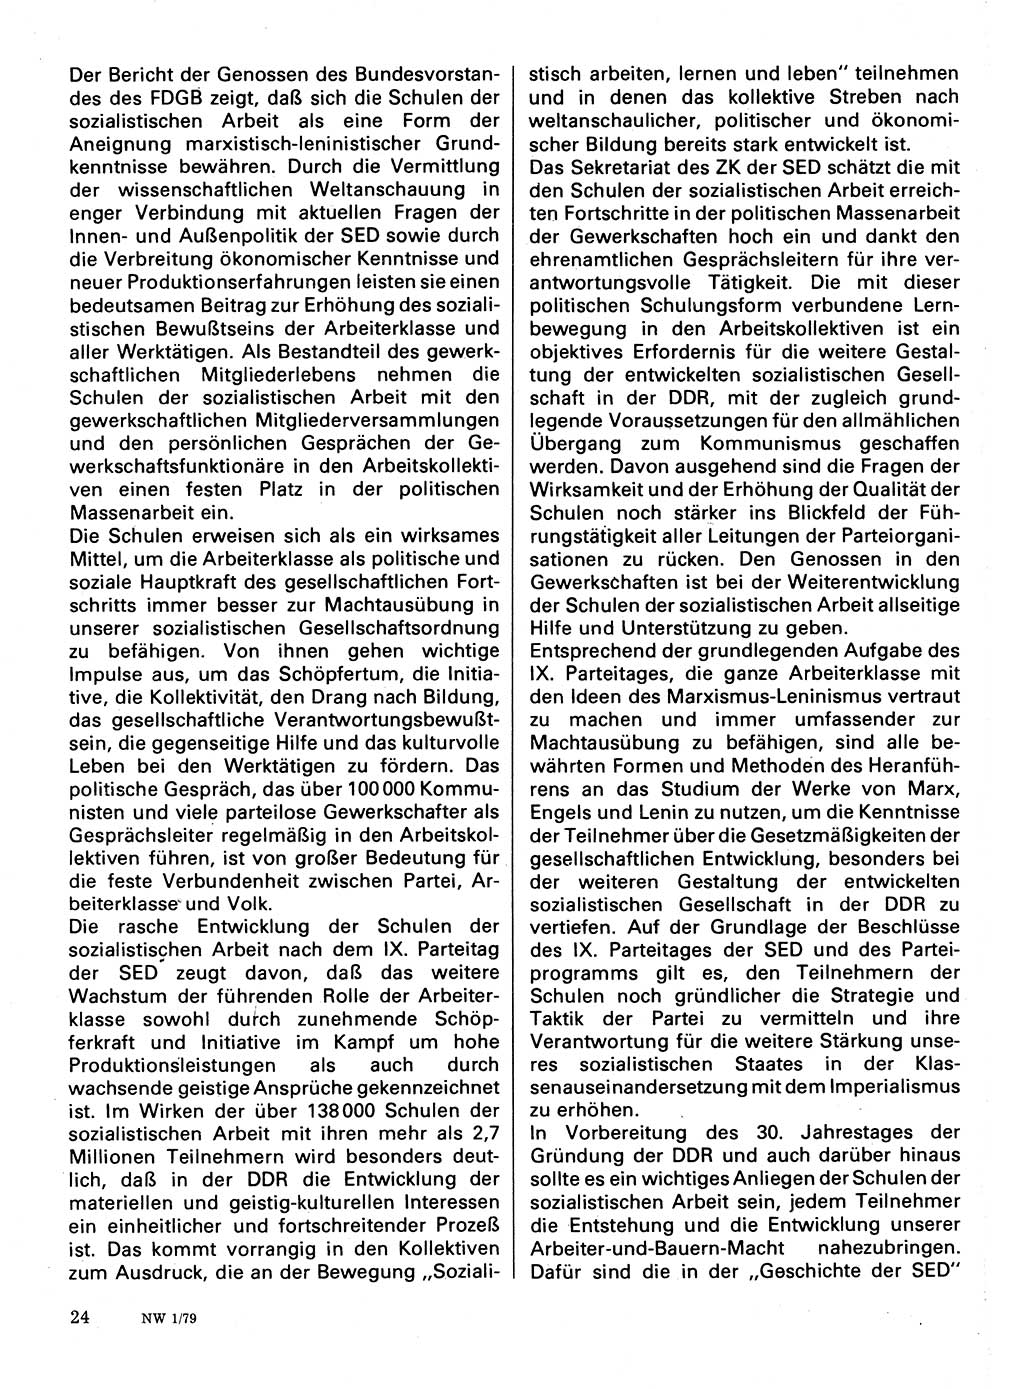 Neuer Weg (NW), Organ des Zentralkomitees (ZK) der SED (Sozialistische Einheitspartei Deutschlands) für Fragen des Parteilebens, 34. Jahrgang [Deutsche Demokratische Republik (DDR)] 1979, Seite 24 (NW ZK SED DDR 1979, S. 24)